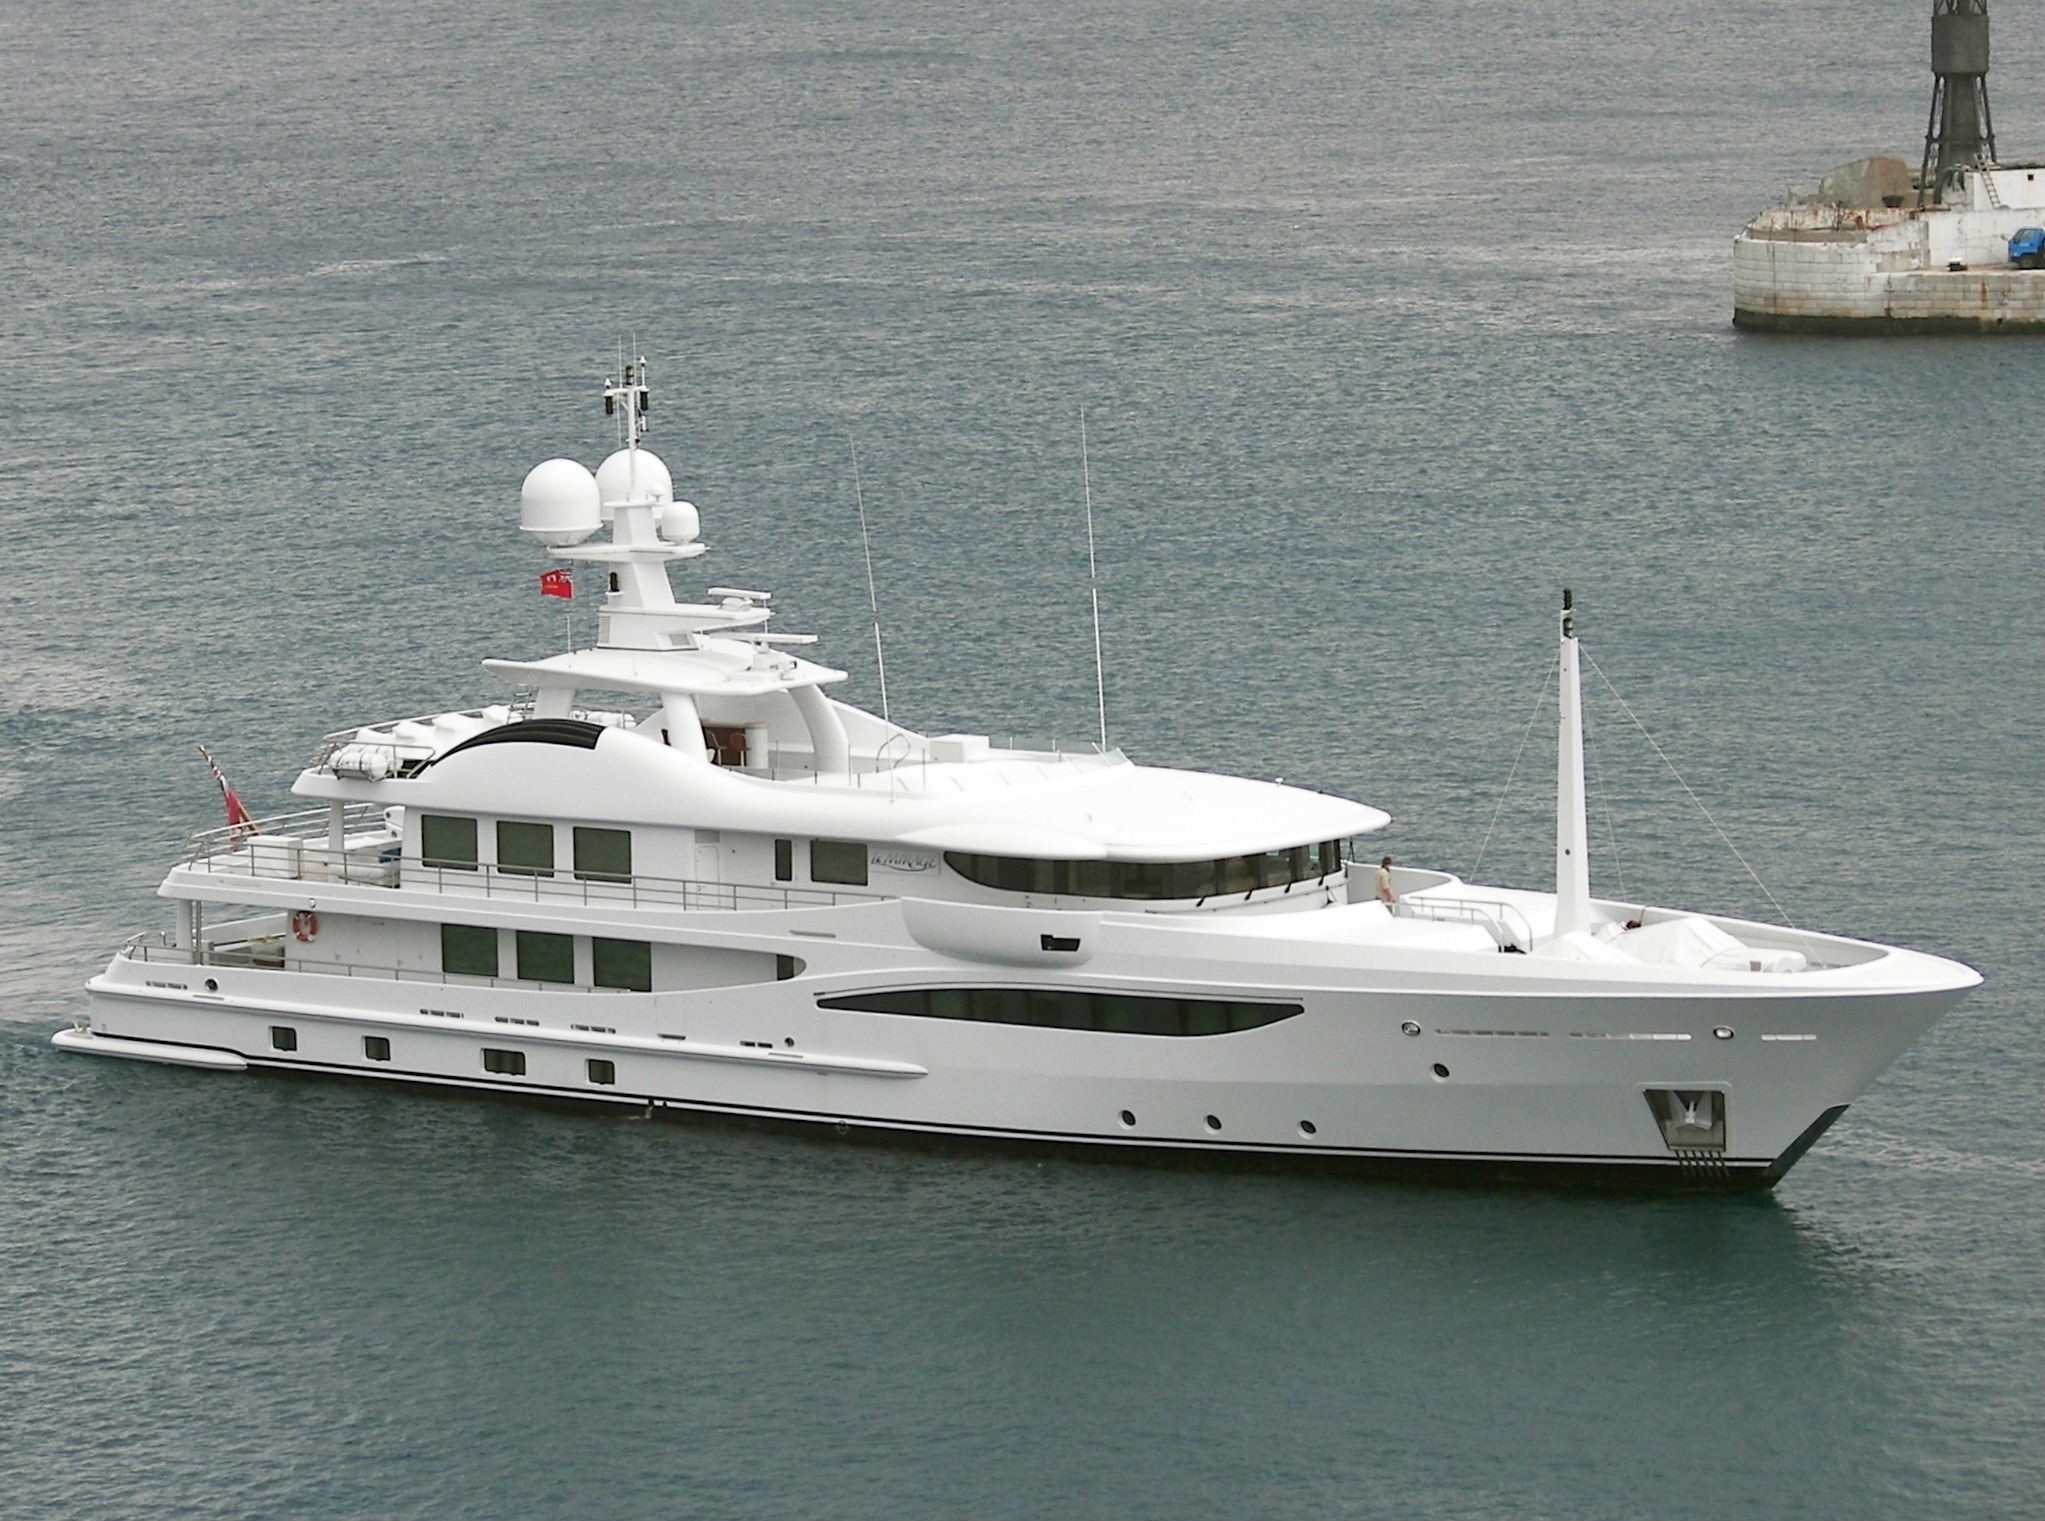 la mirage guest yacht